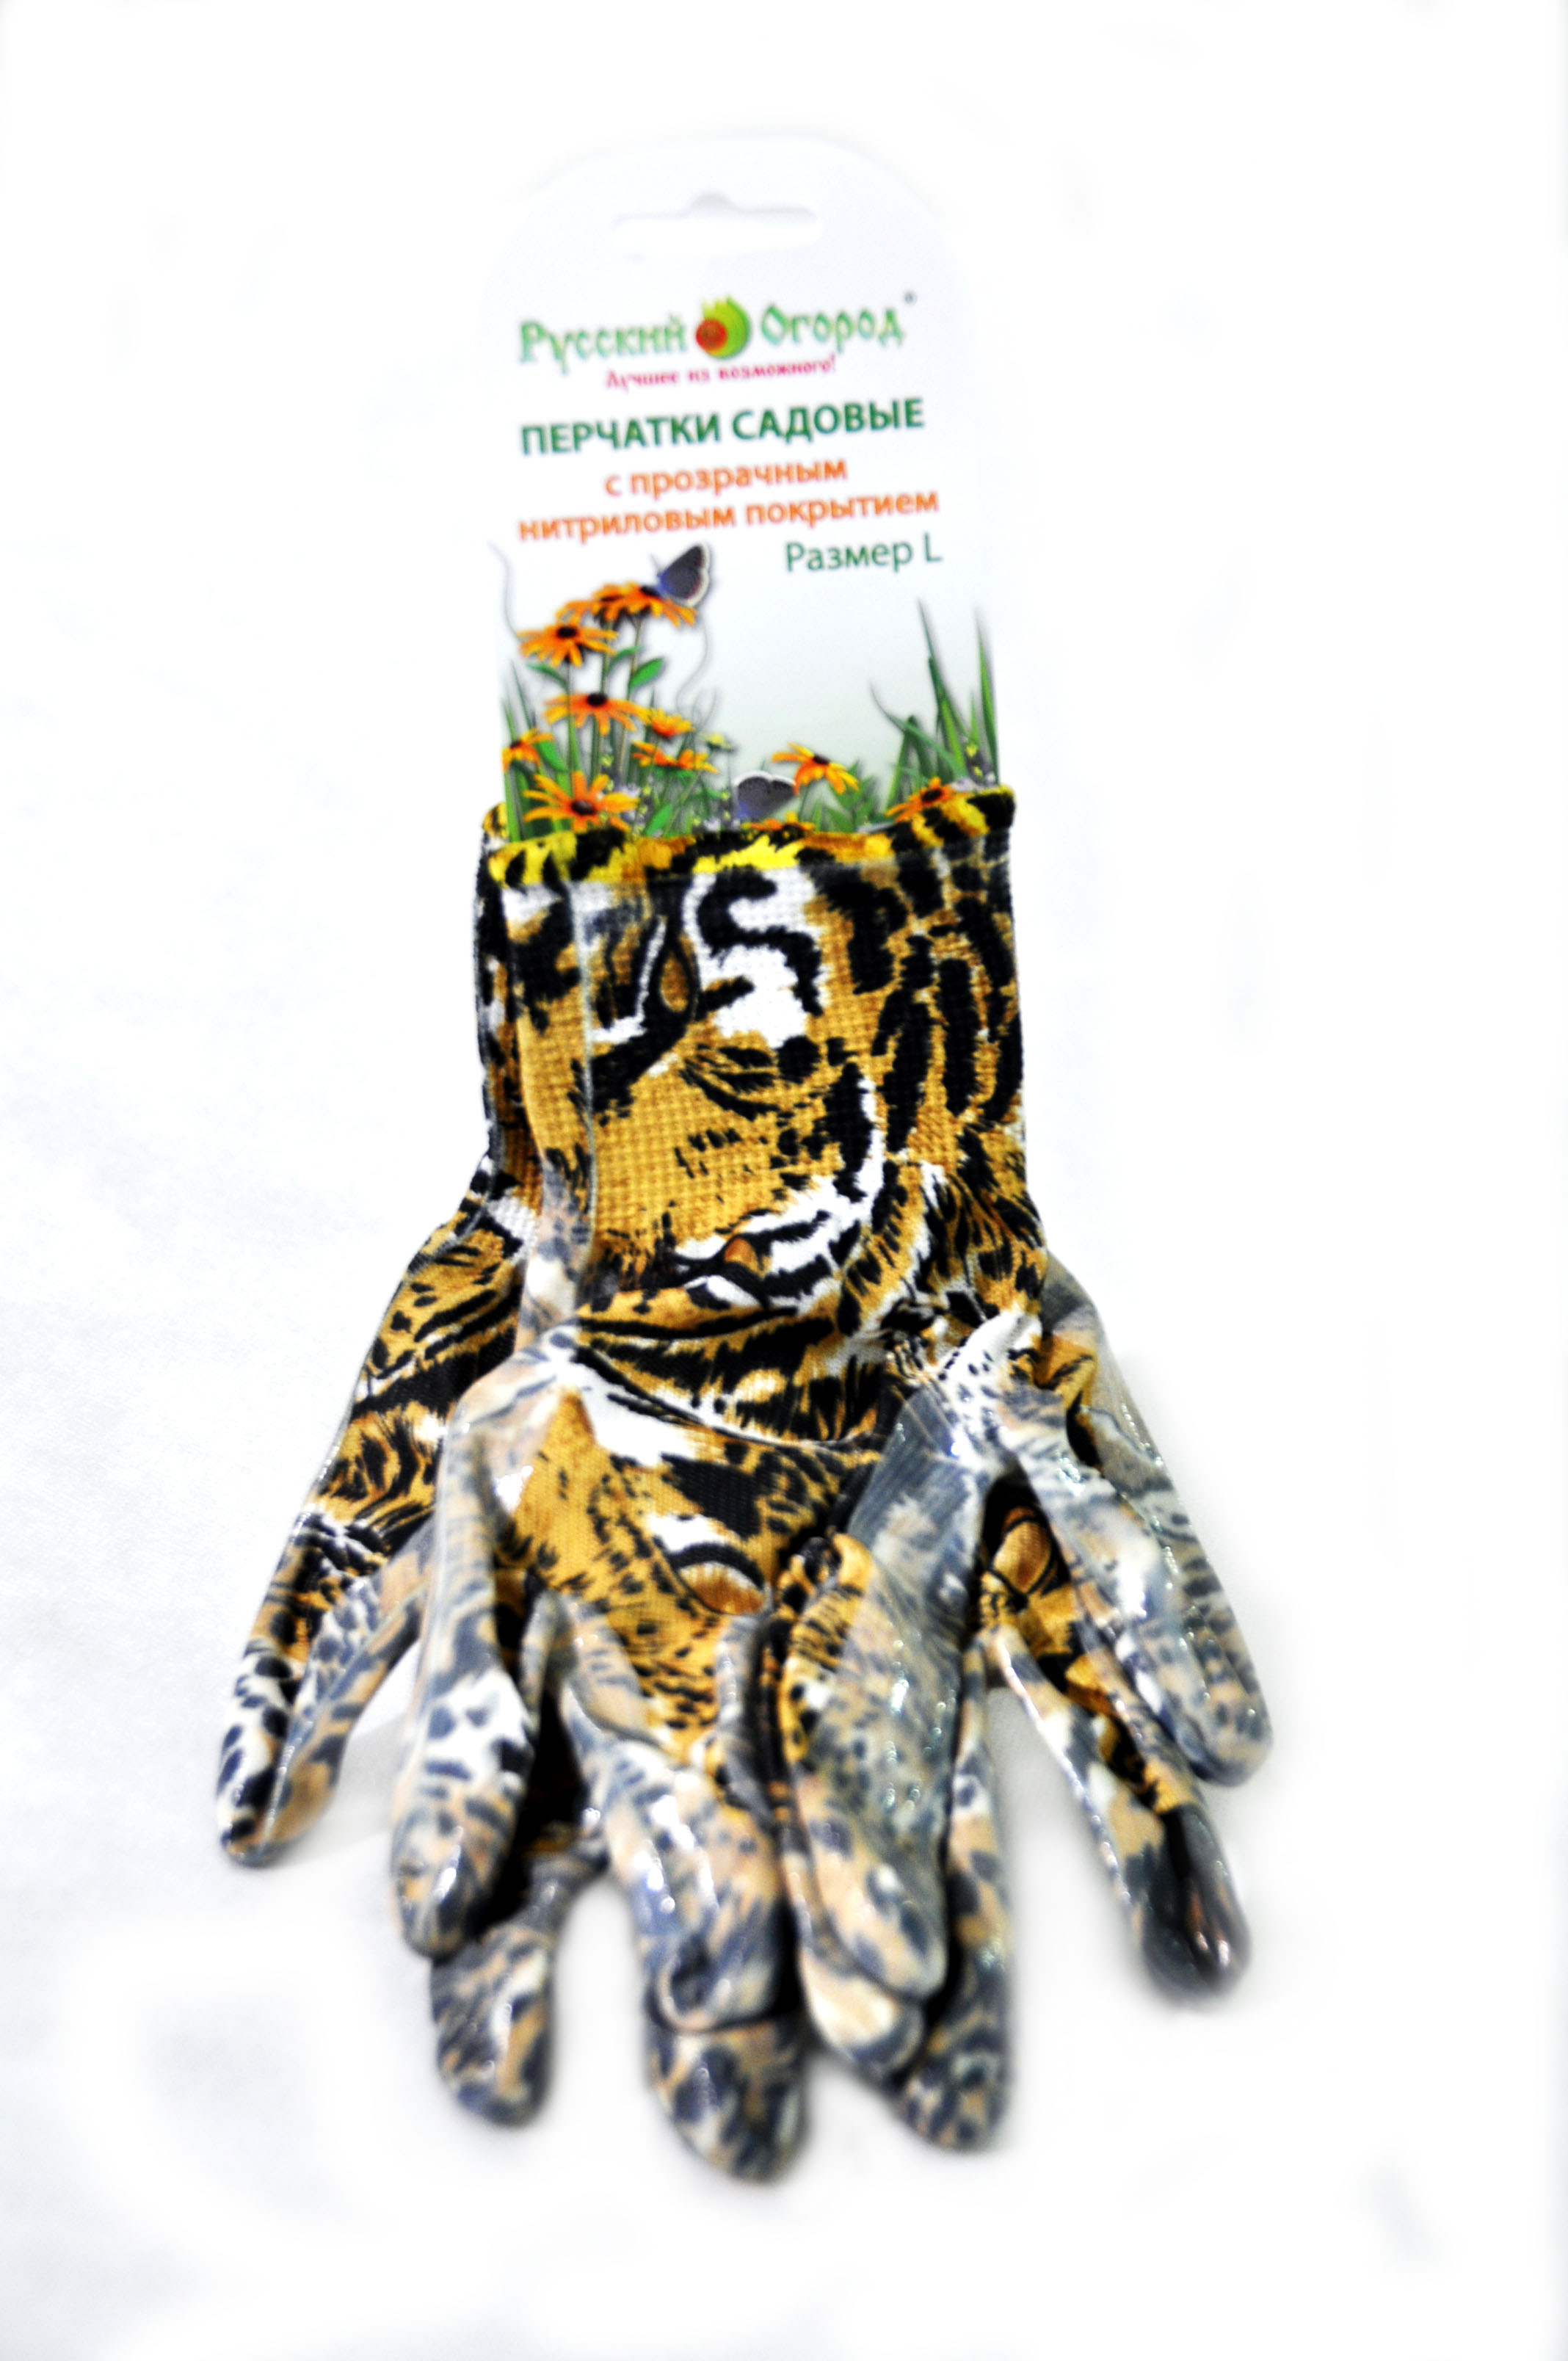 Перчатки Русский Огород нейлоновые с нитриловым покрытием леопардовые, размер XL